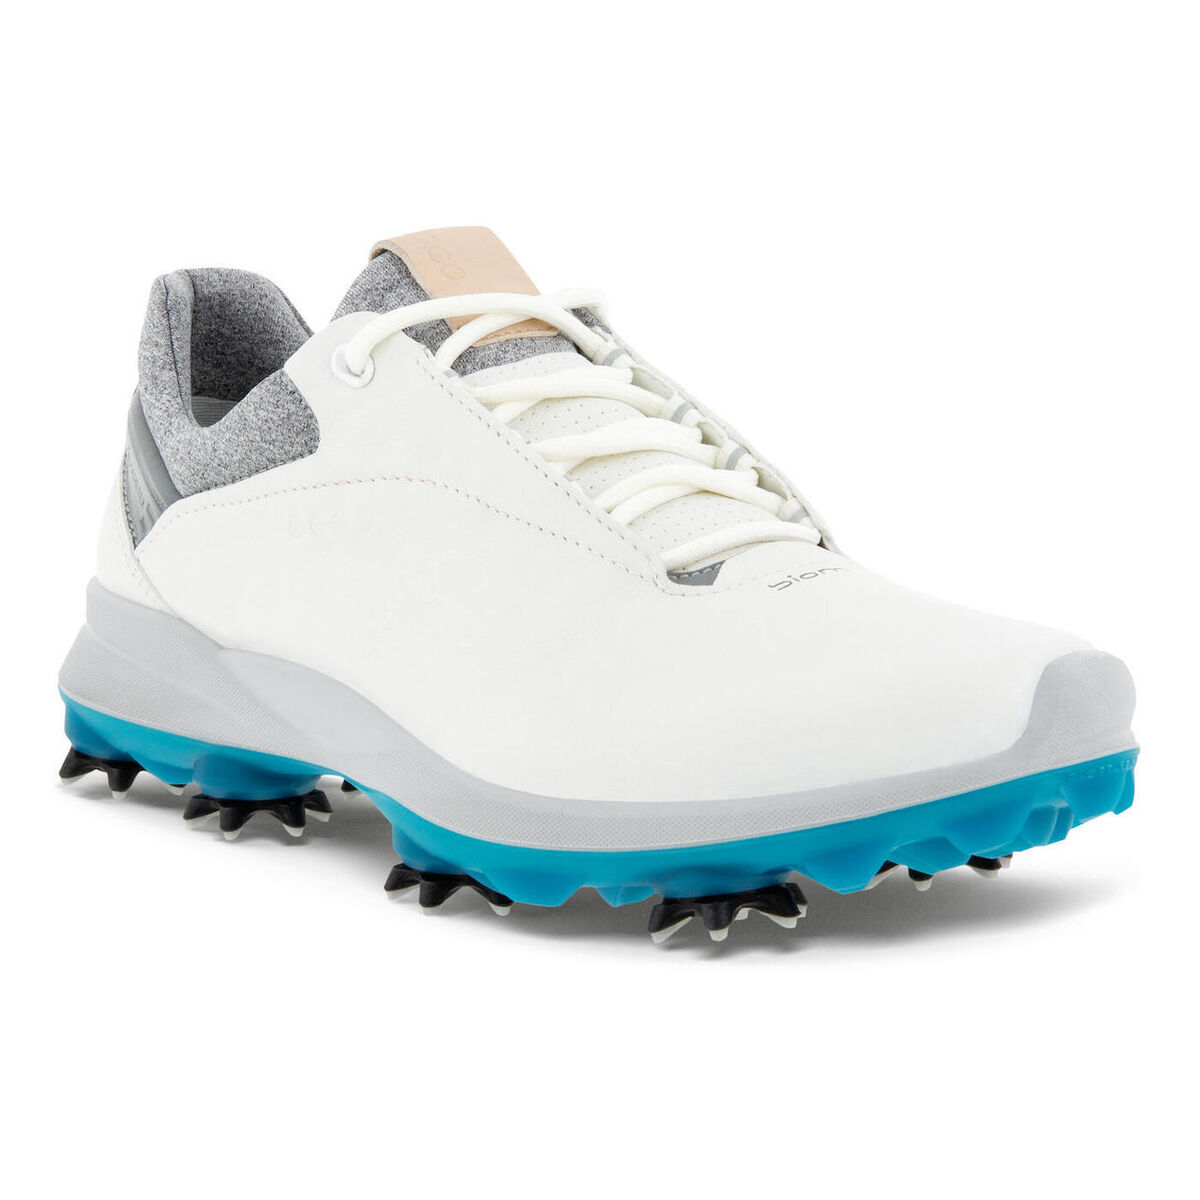 ECCO Golf Shoes That Golfers Swear By Golflink.com